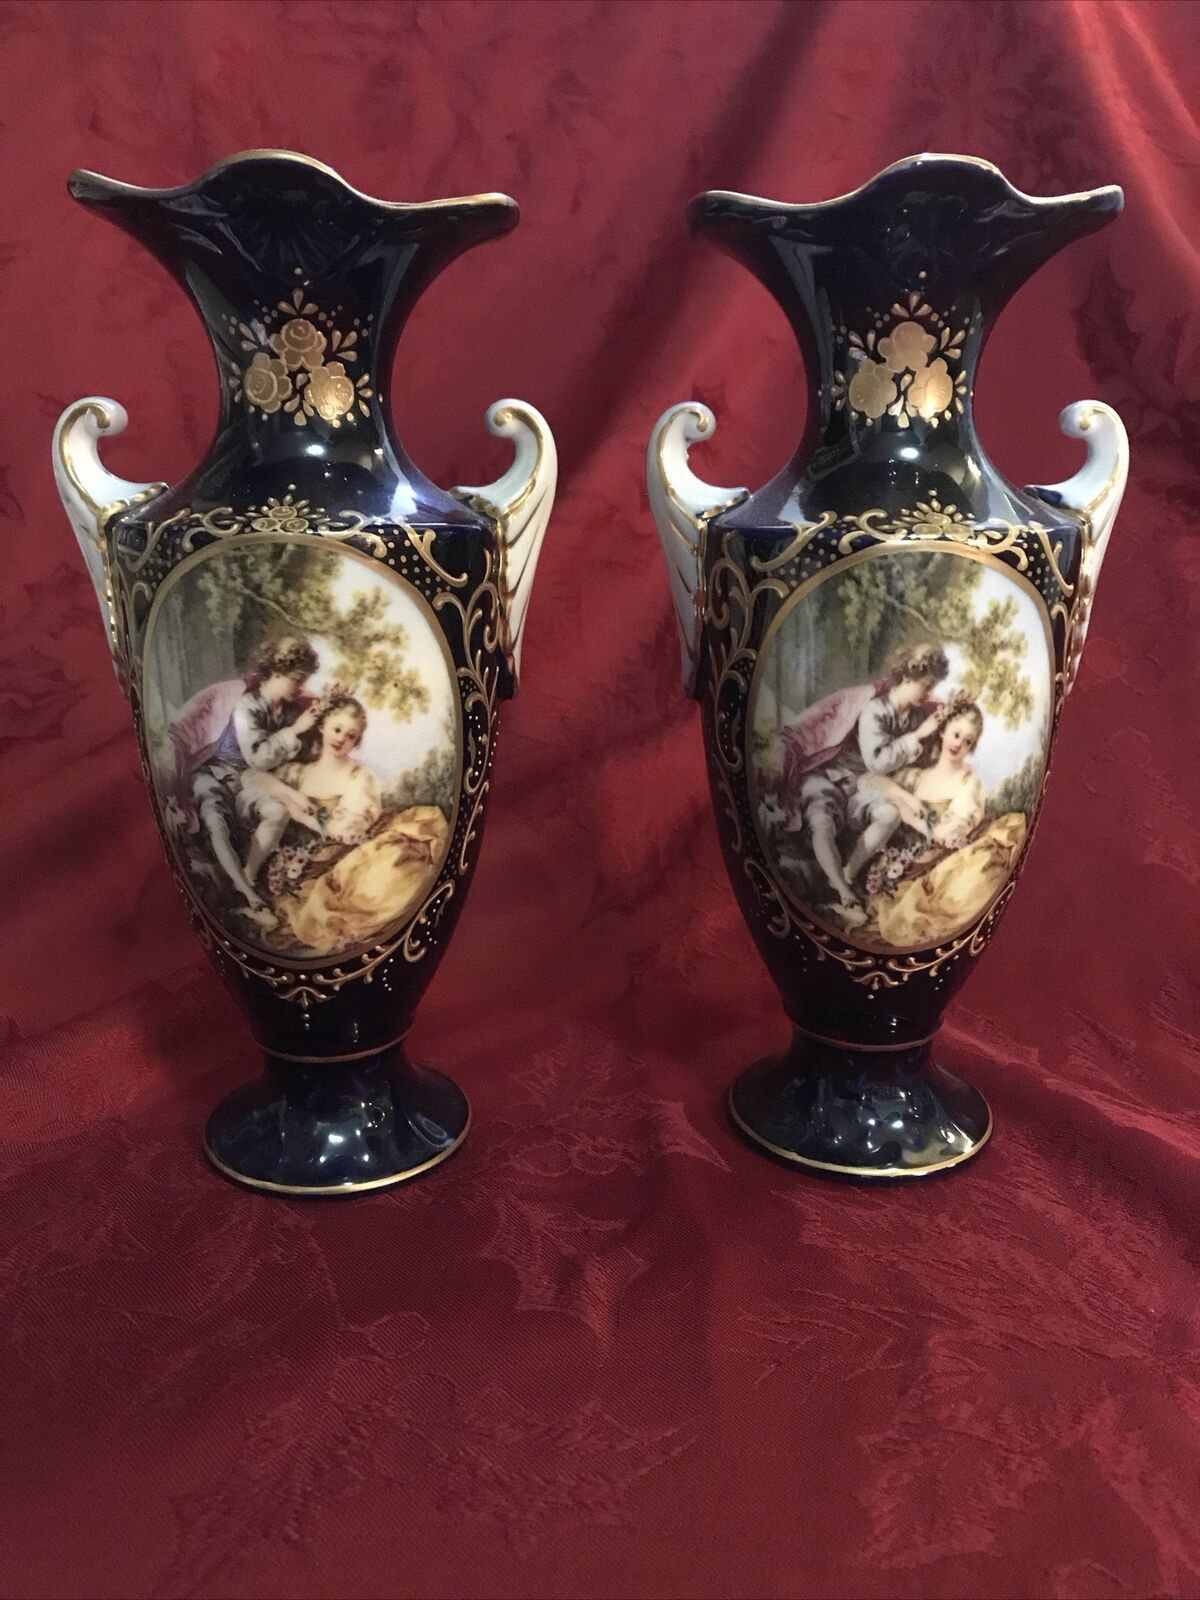 2 Antique Sevres Style Porcelain Mantle Vase Gilt Romantic Couple 8.5”